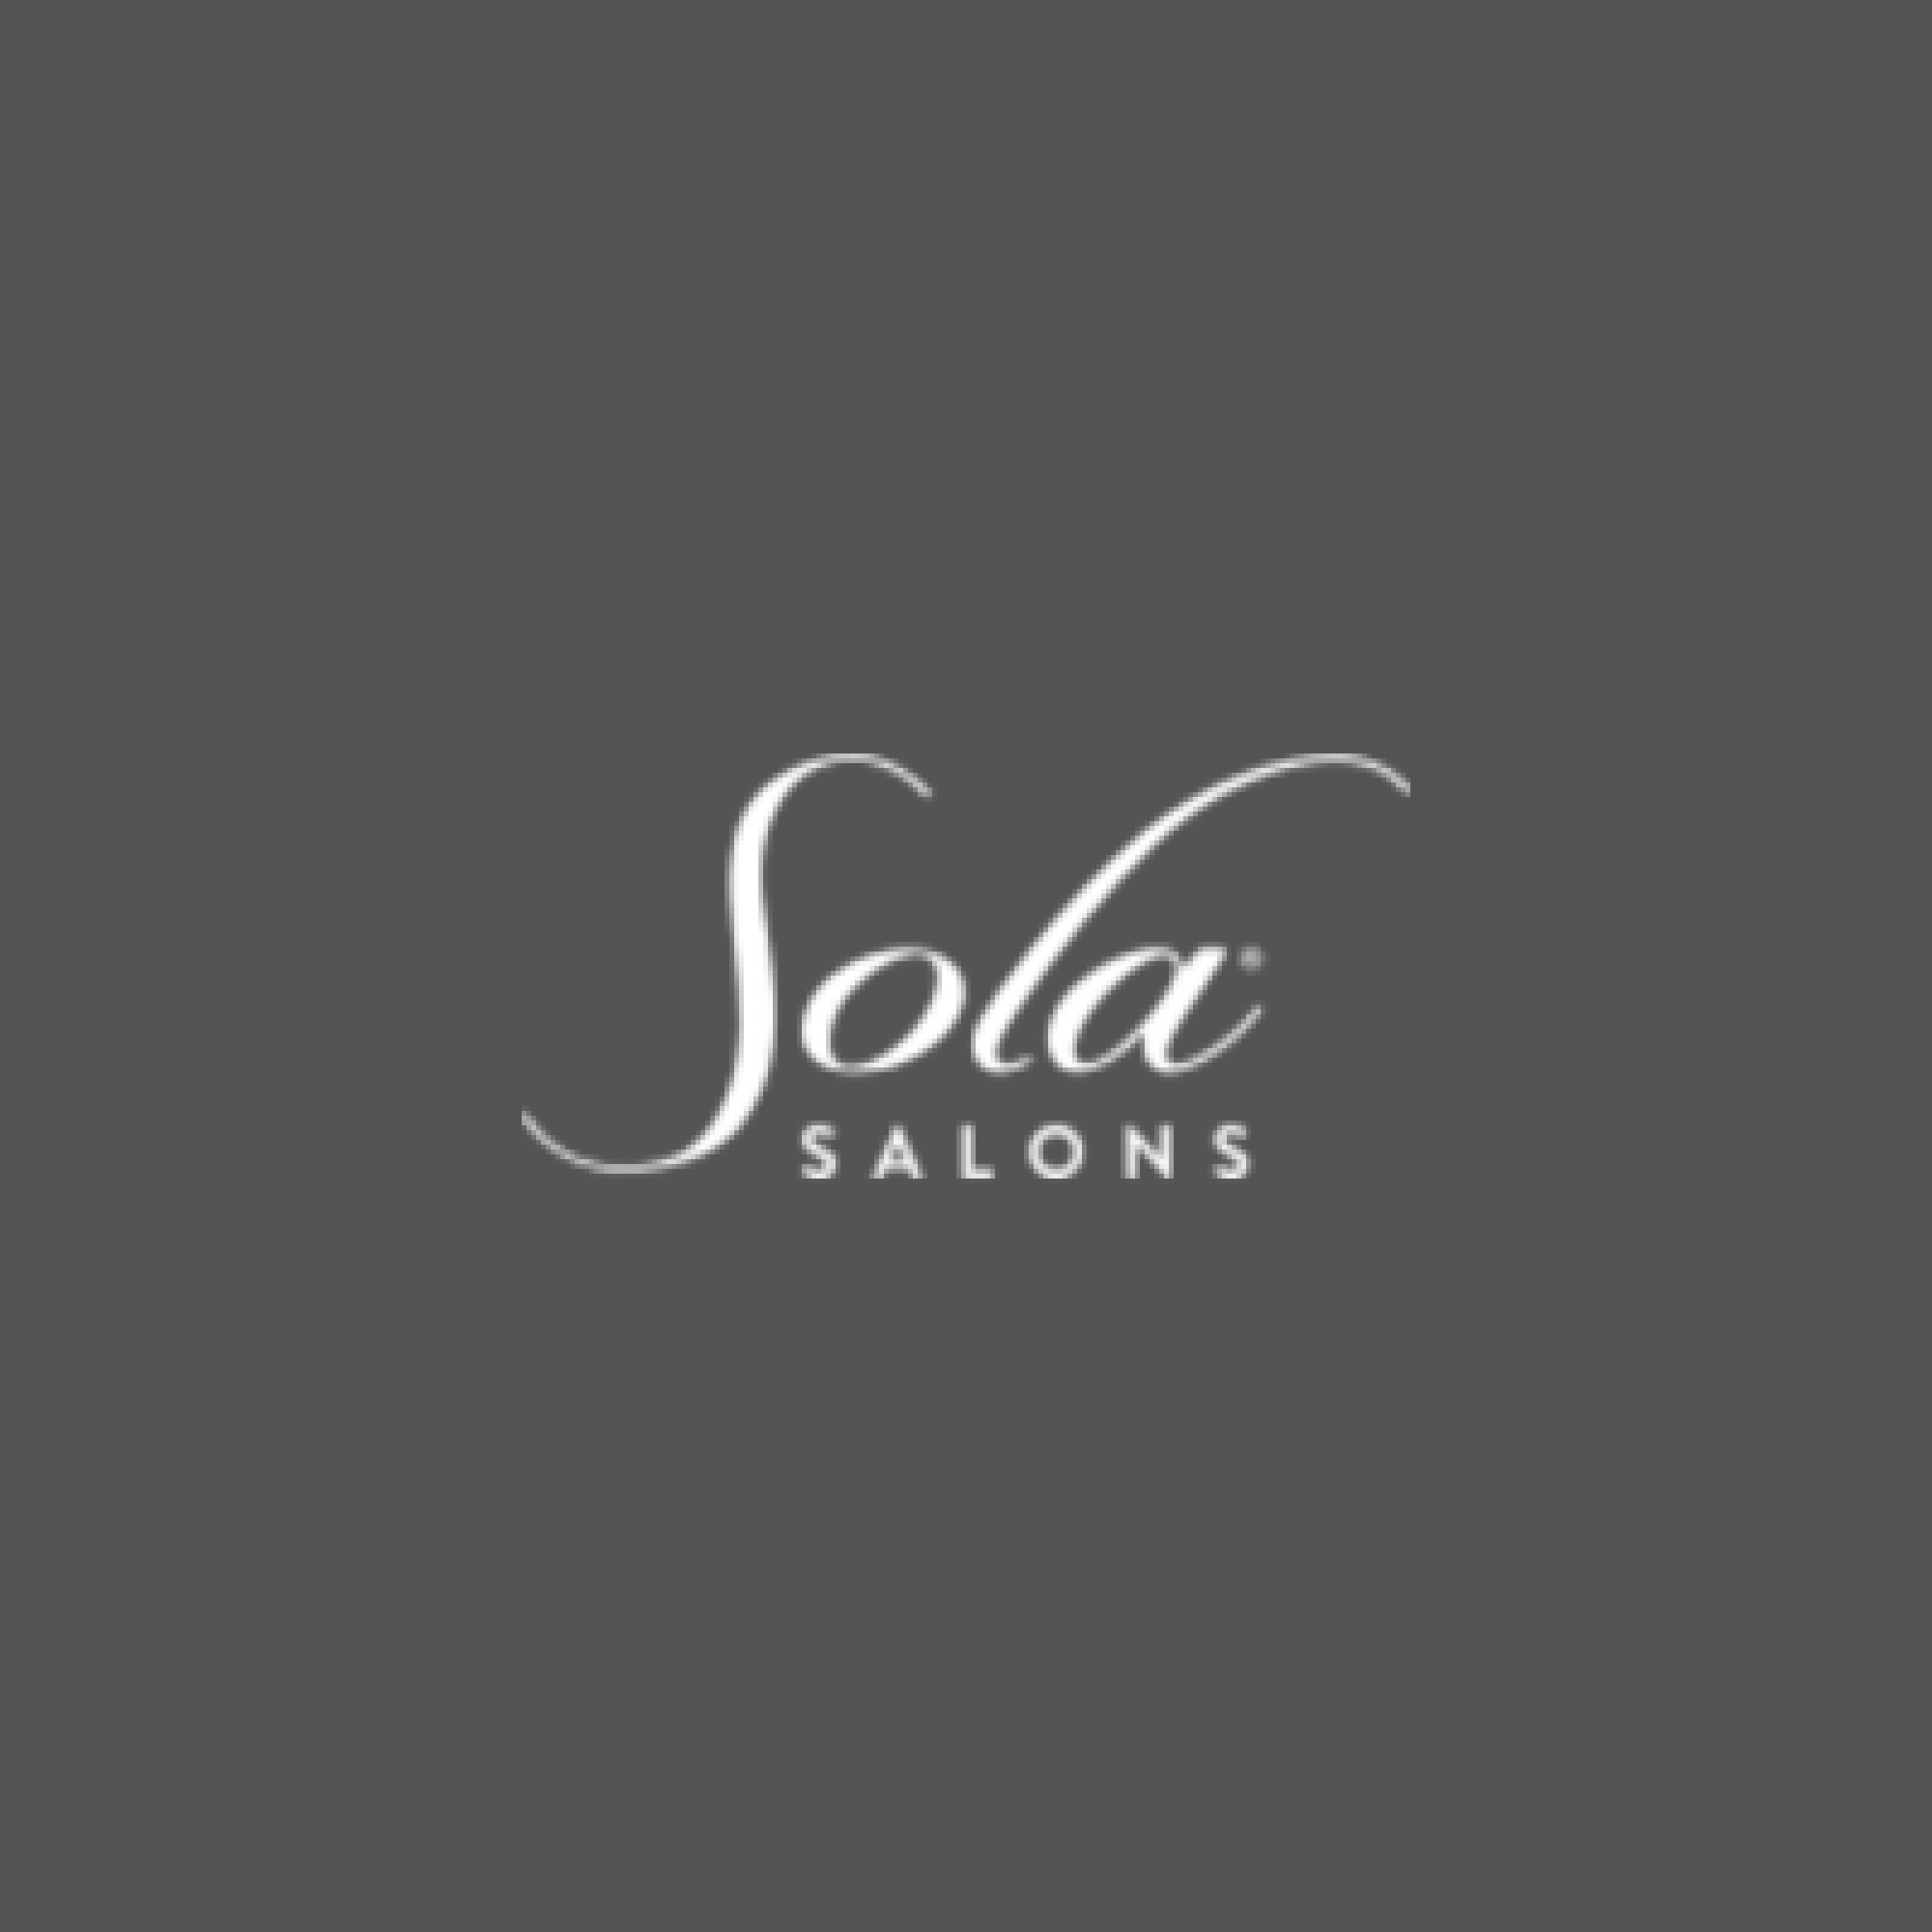 Sola Salon Studios - Glastonbury